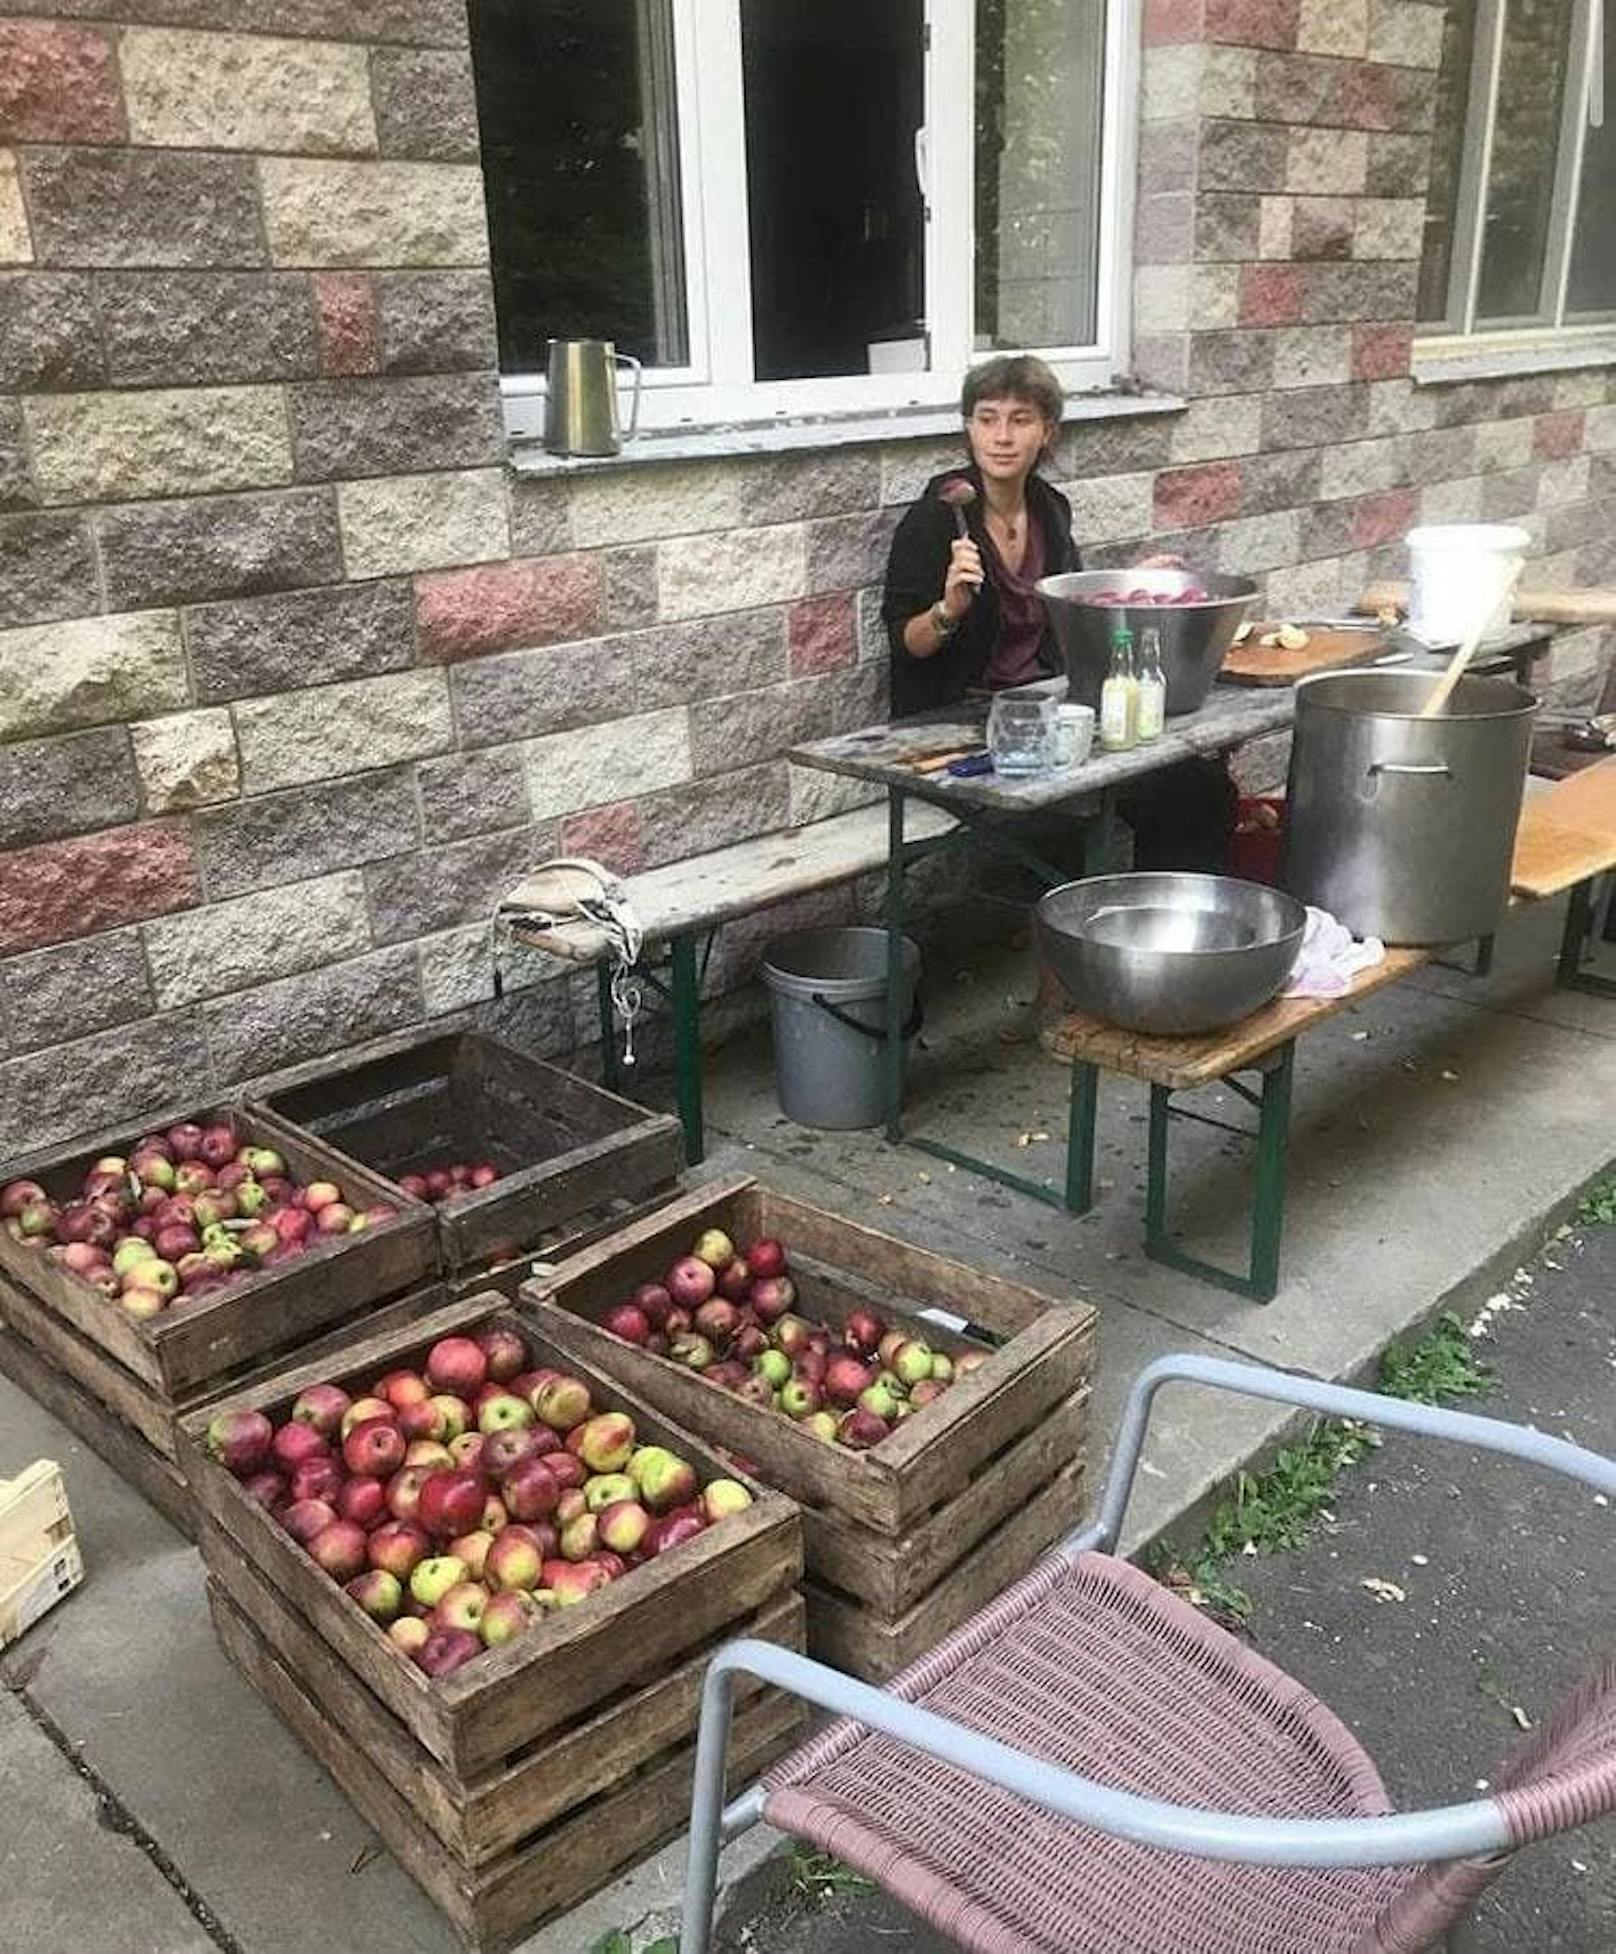 Student*innen beim Einkochen von köstlichen Äpfeln